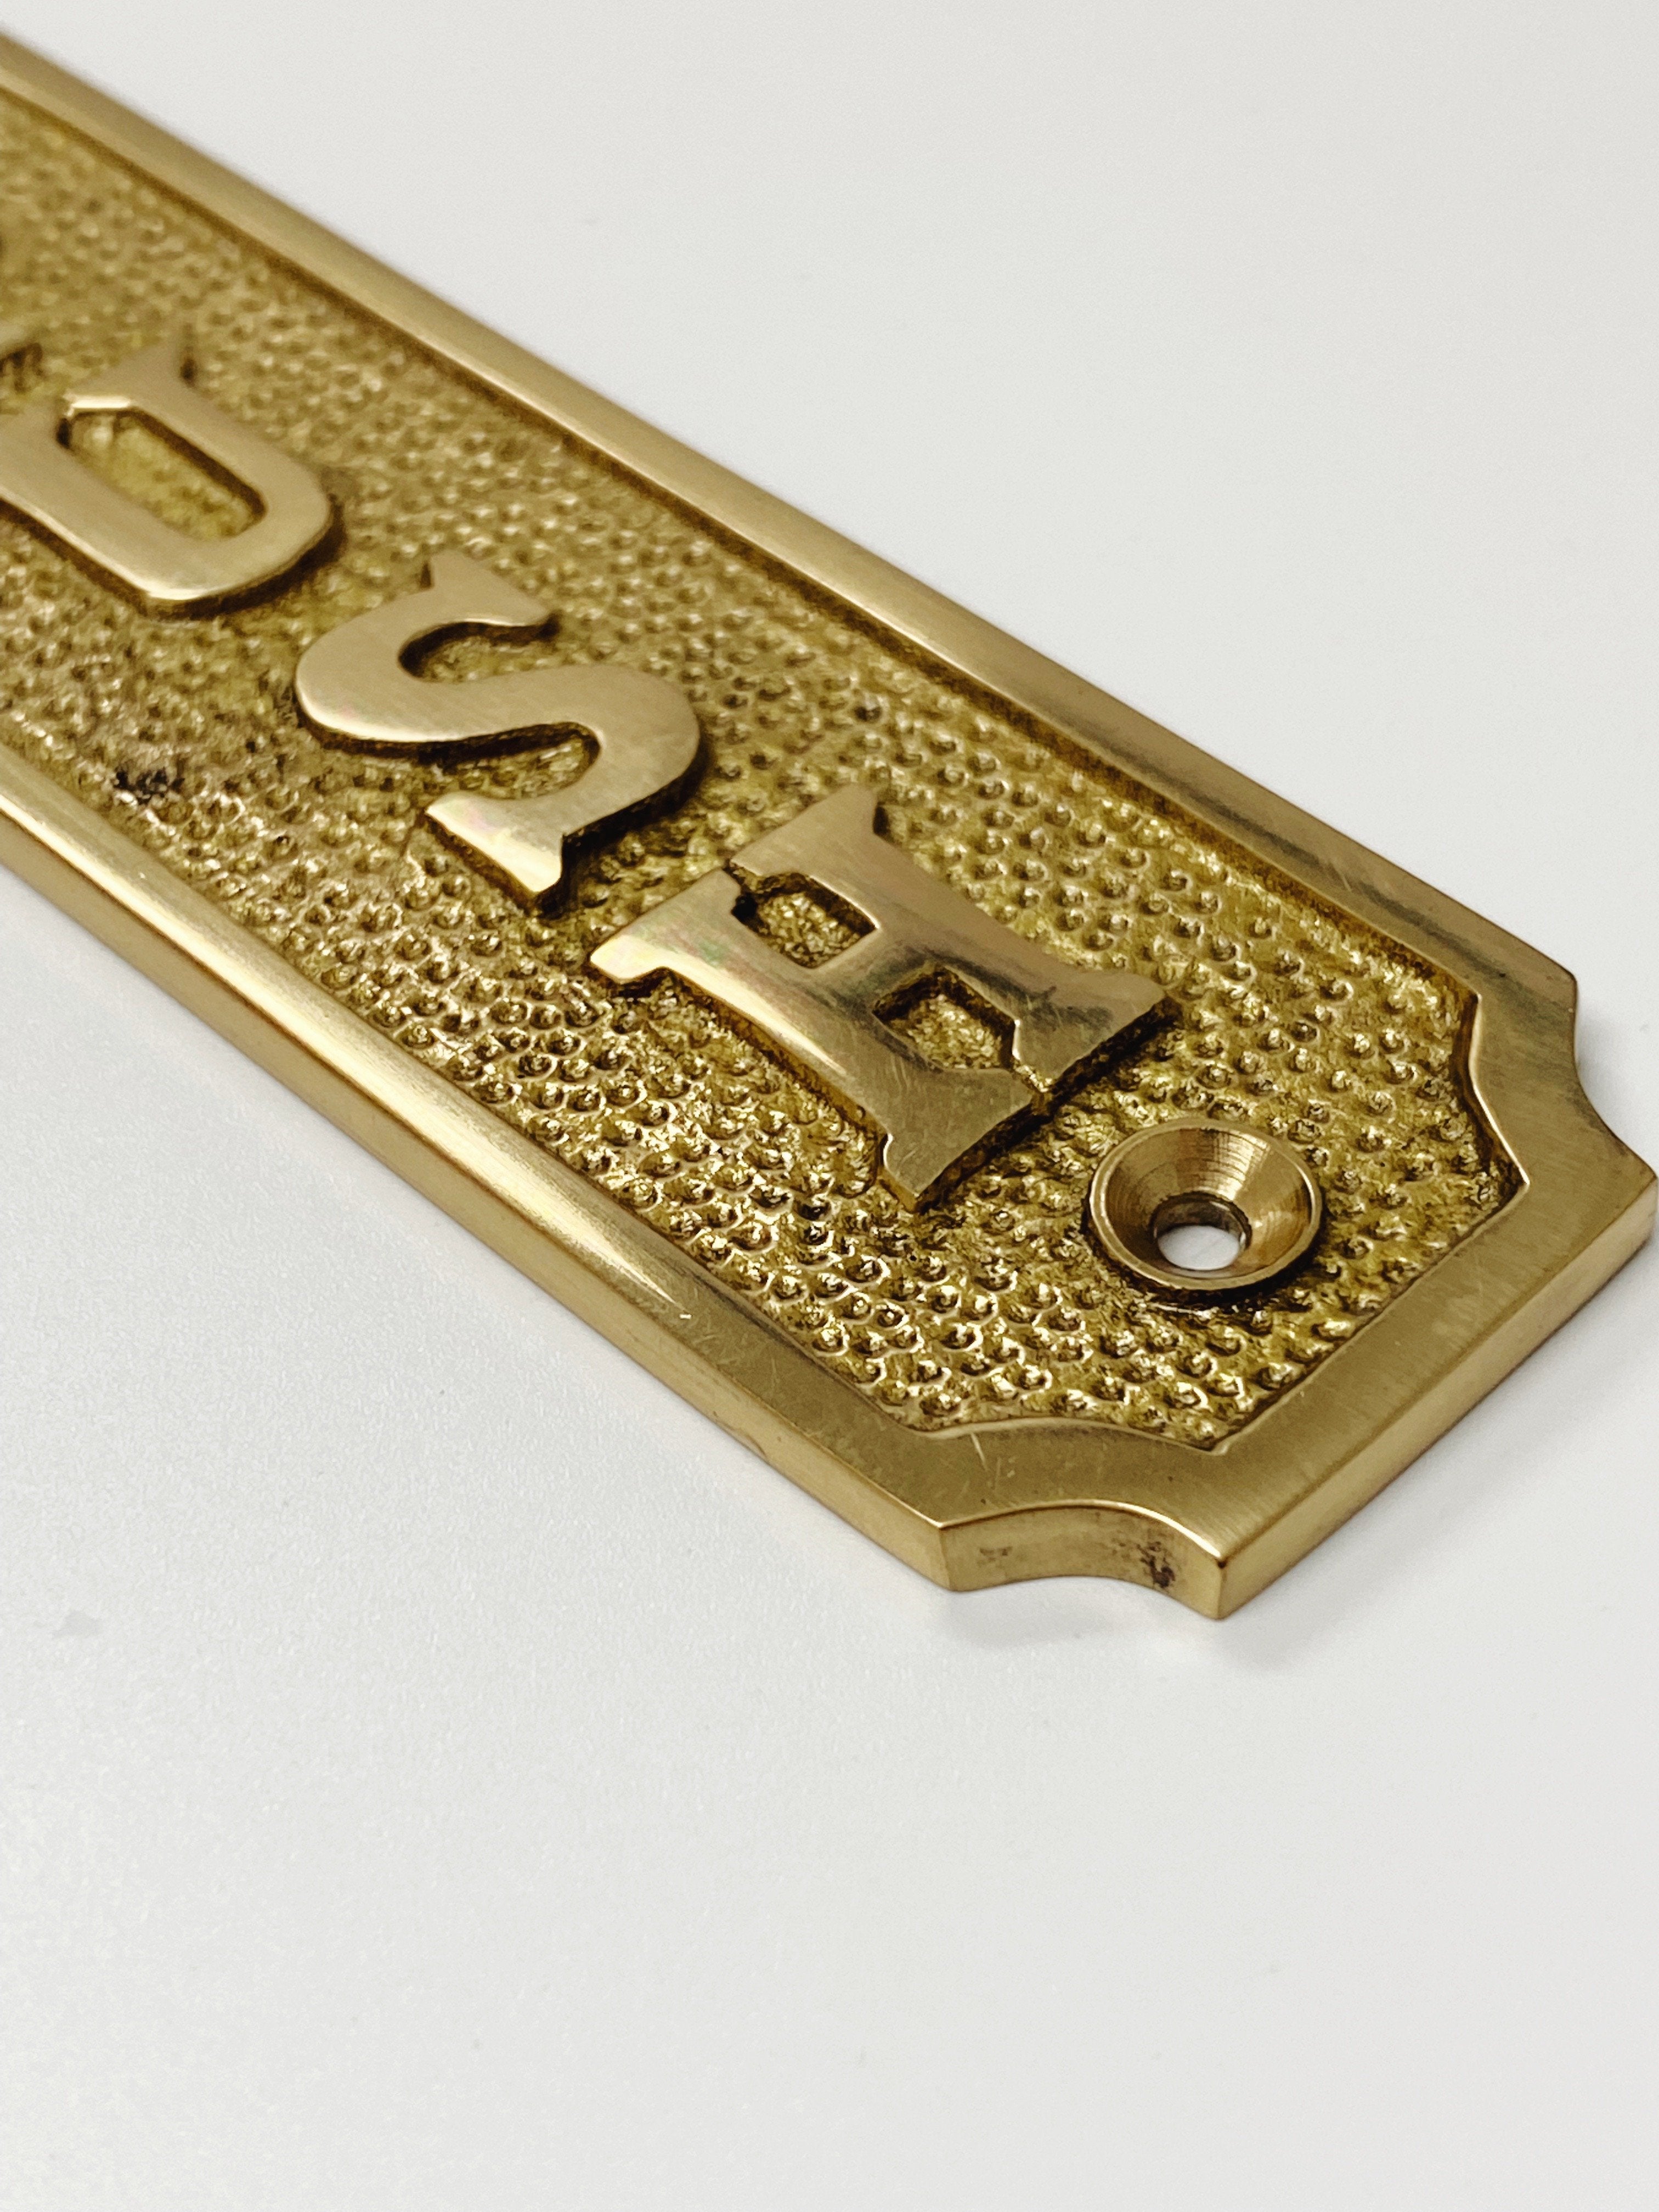 Brass "Push" Door Sign 1-5/16” W x 4-1/2” H - Brass Door Sign | Hook